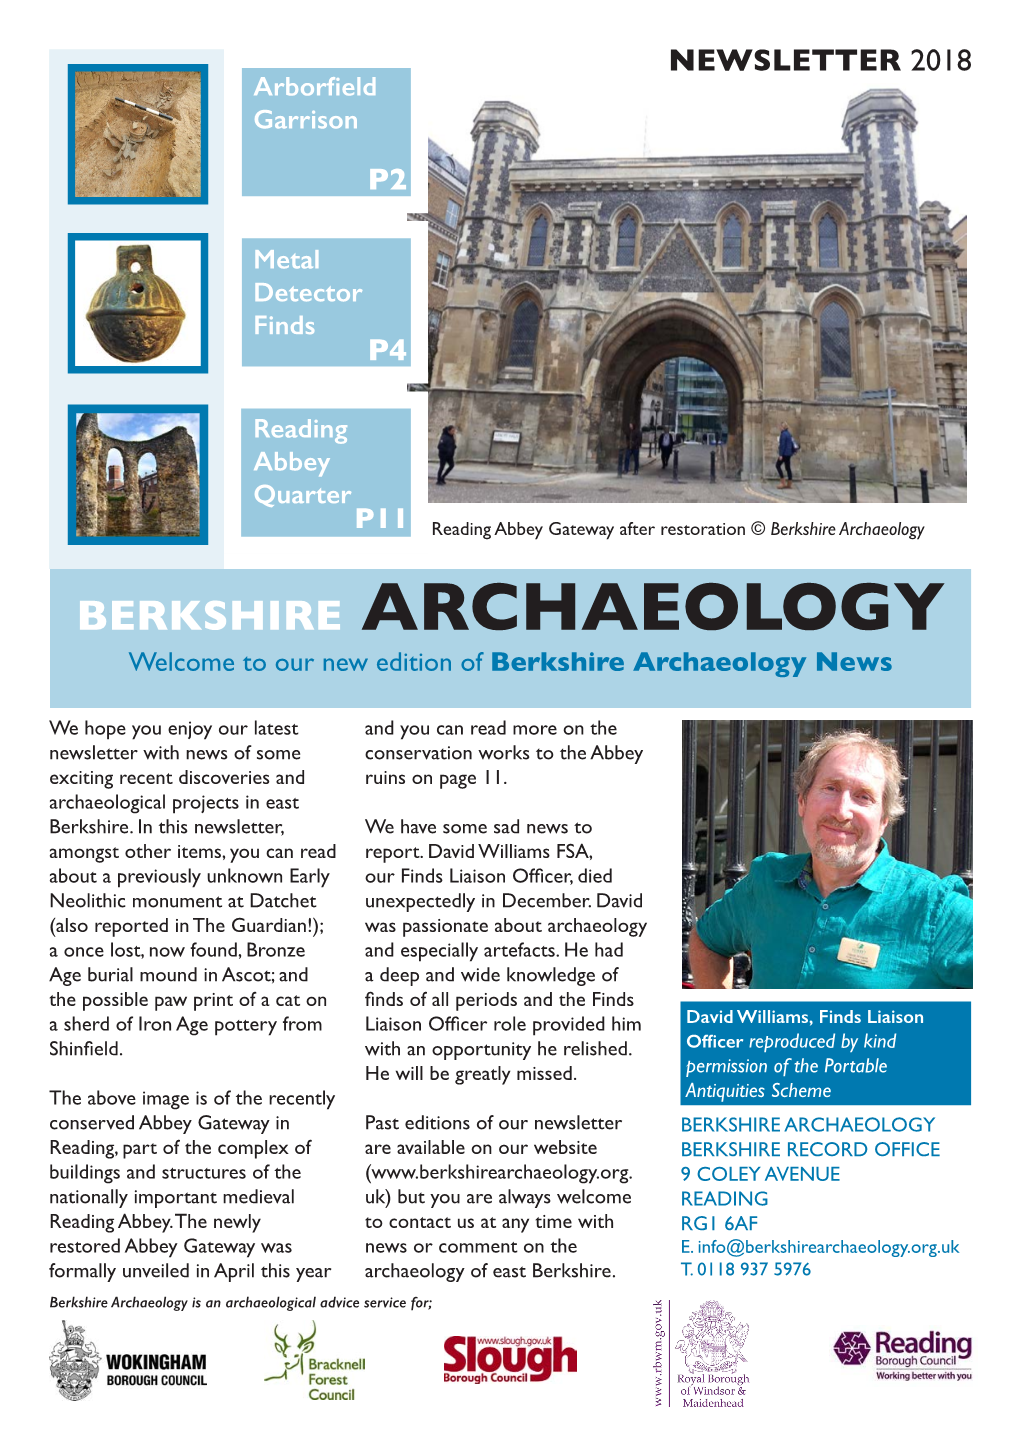 Berkshire Archaeology Newsletter 2018